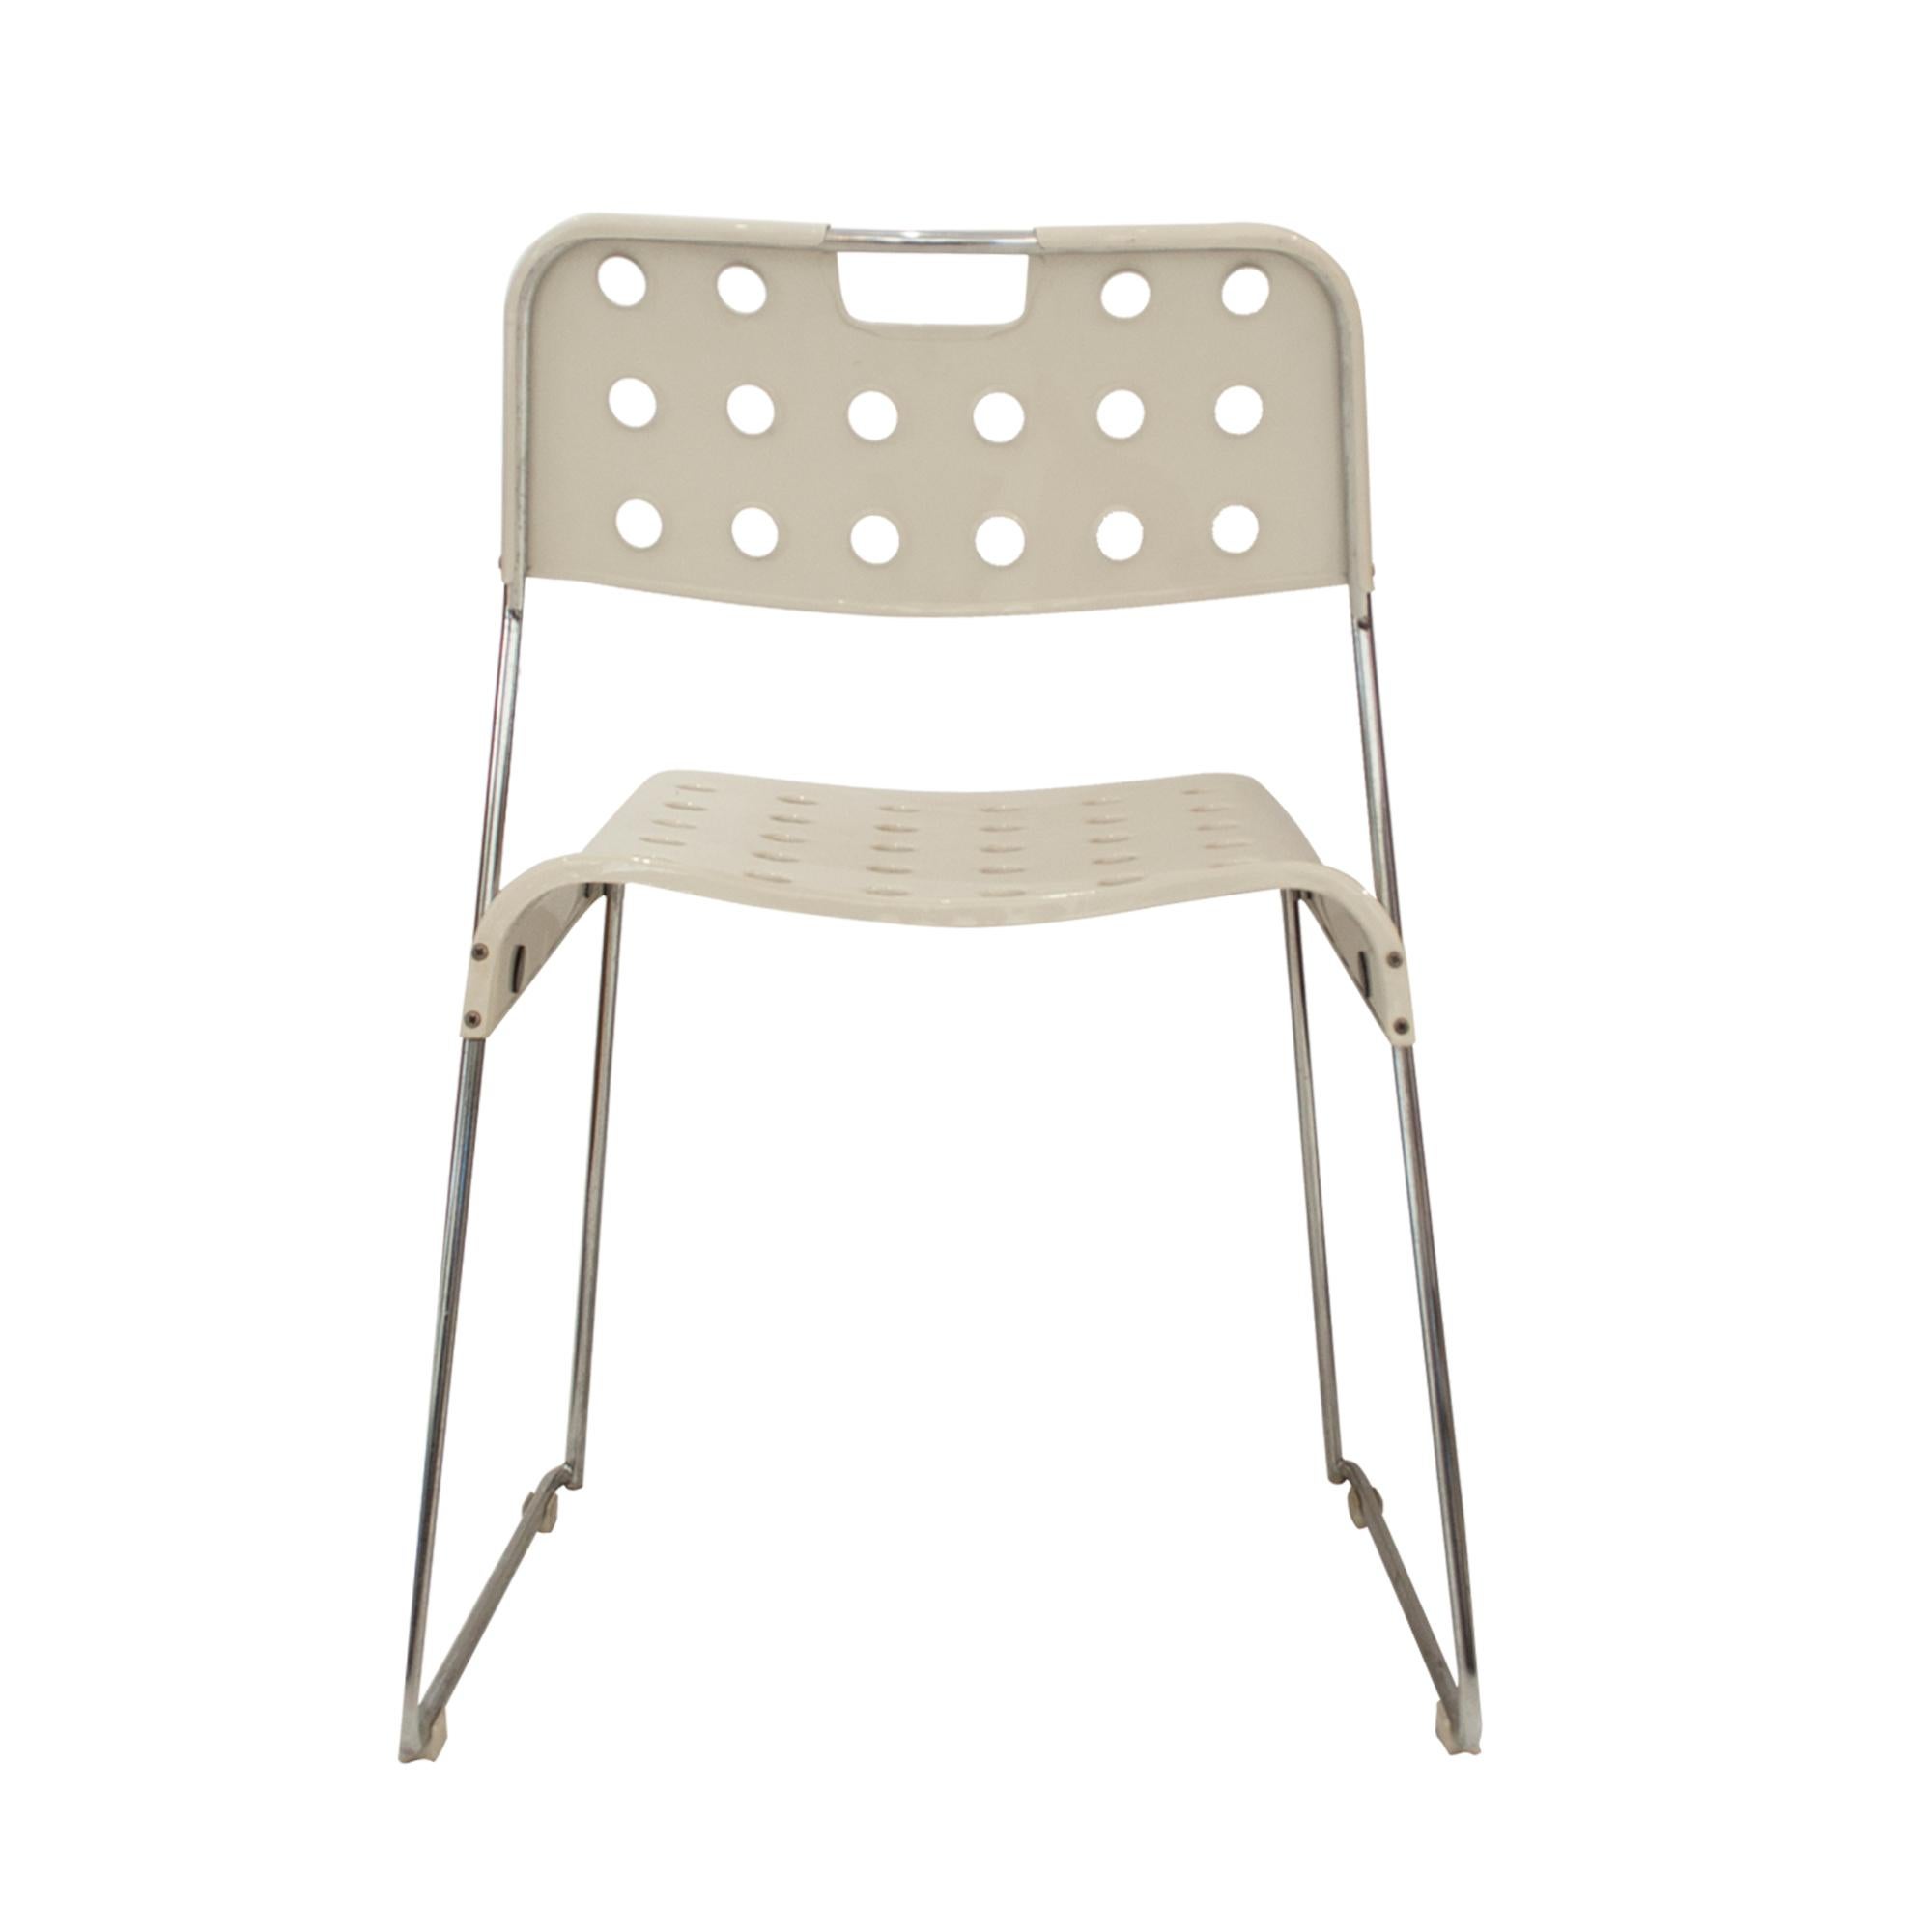 Steel Set of Omkstak Chair by Rodney Kinsman for Bieffeplast, 1970, Italy